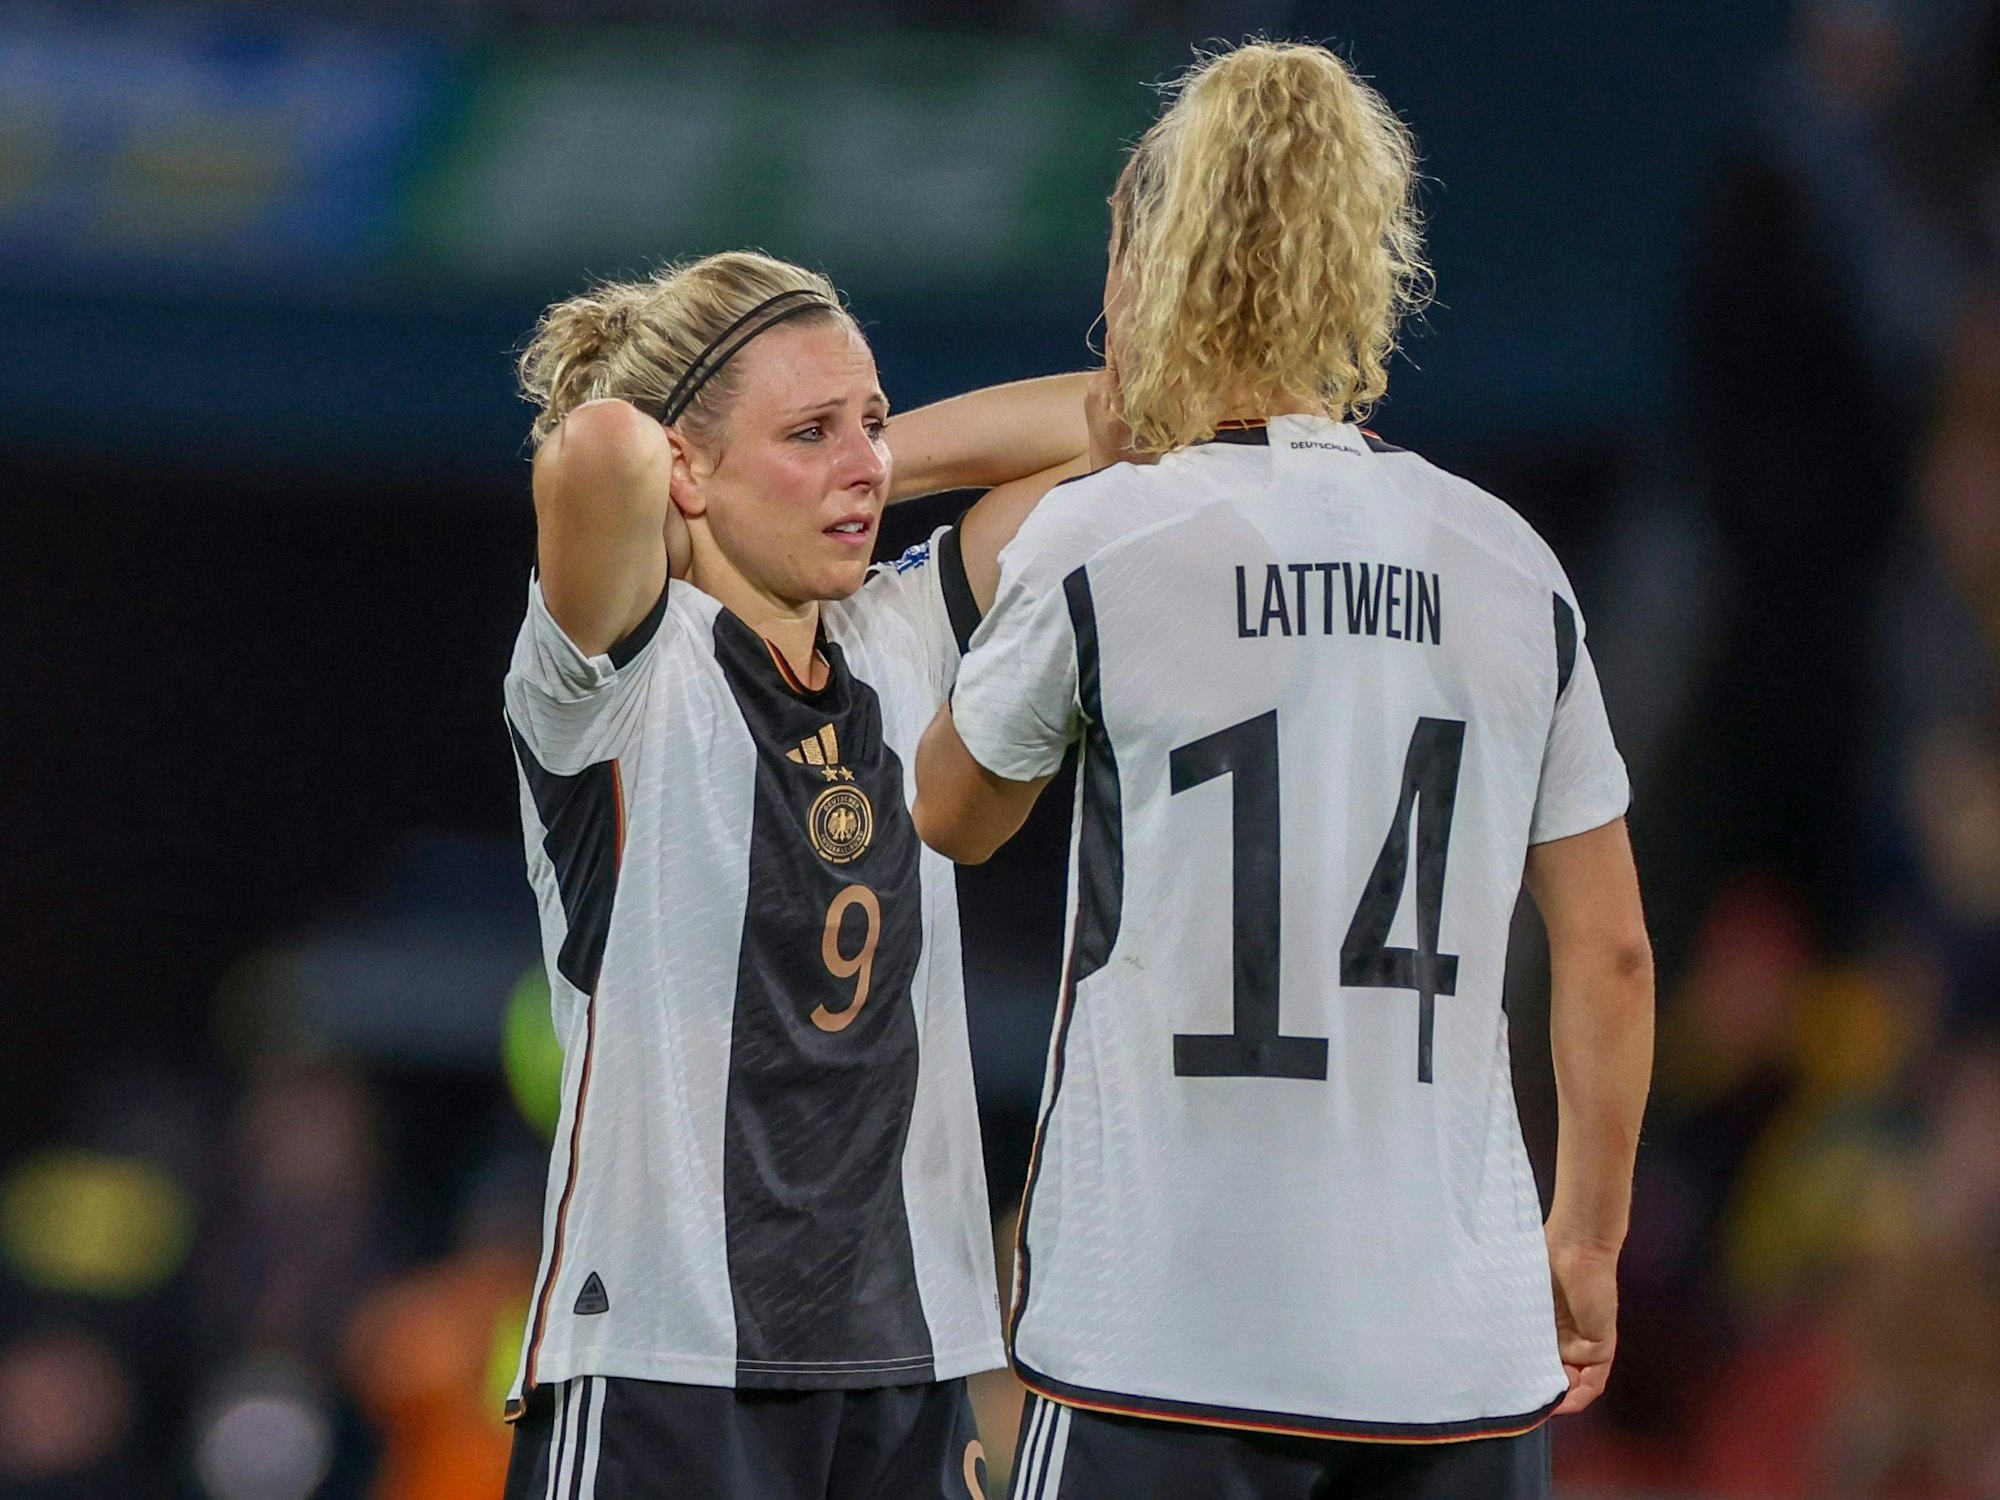 Svenja Huth weint nach dem Spiel gegen Südkorea, neben ihr steht Lena Lattwein.